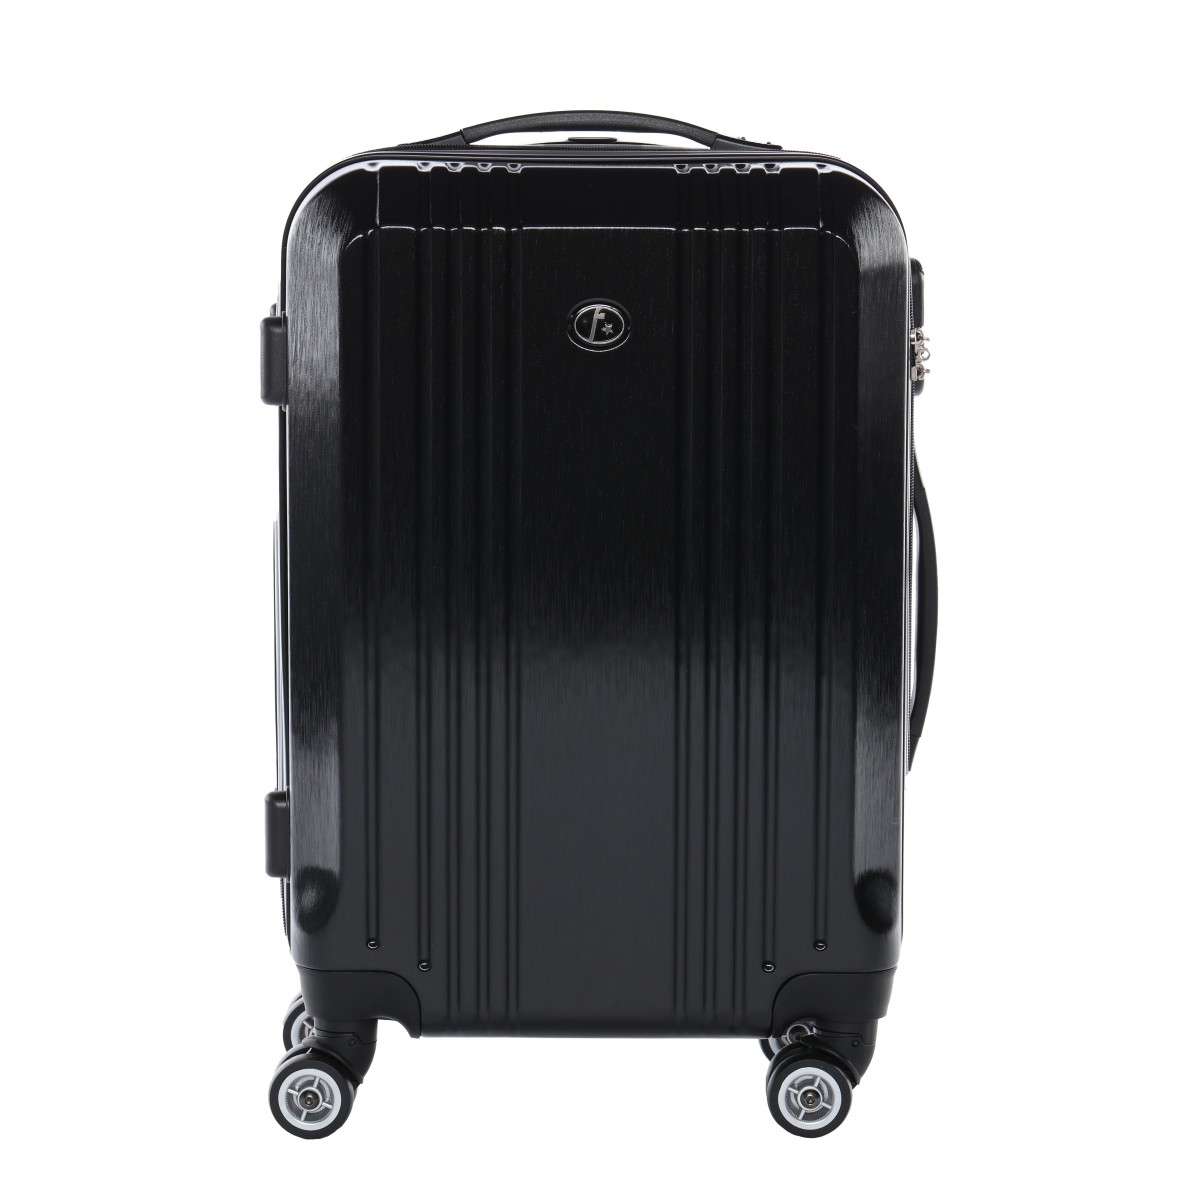 Handgepäck Koffer Hartschale schwarz matt